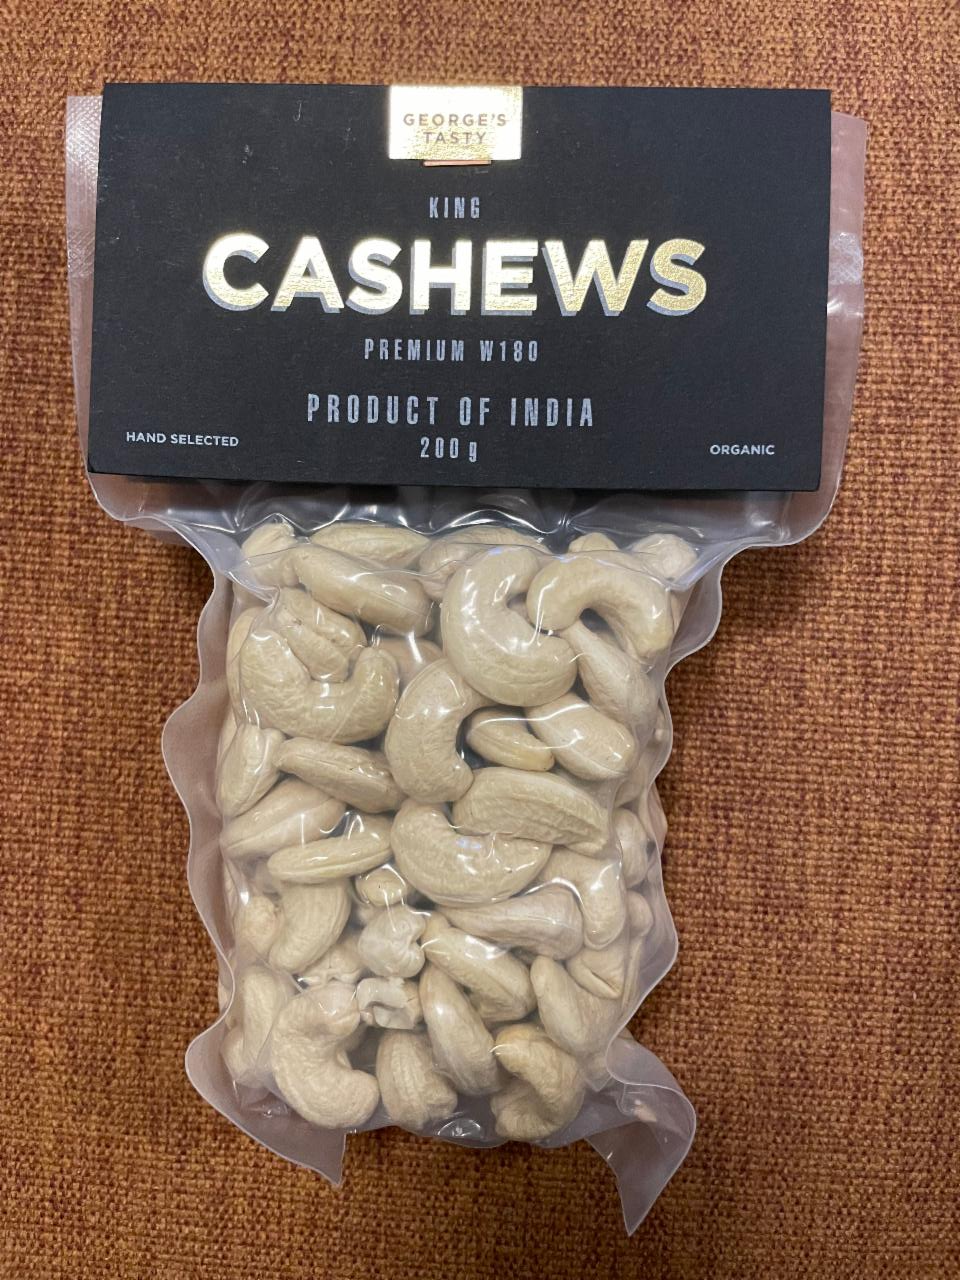 Fotografie - King Cashews Premium W180 George's Tasty